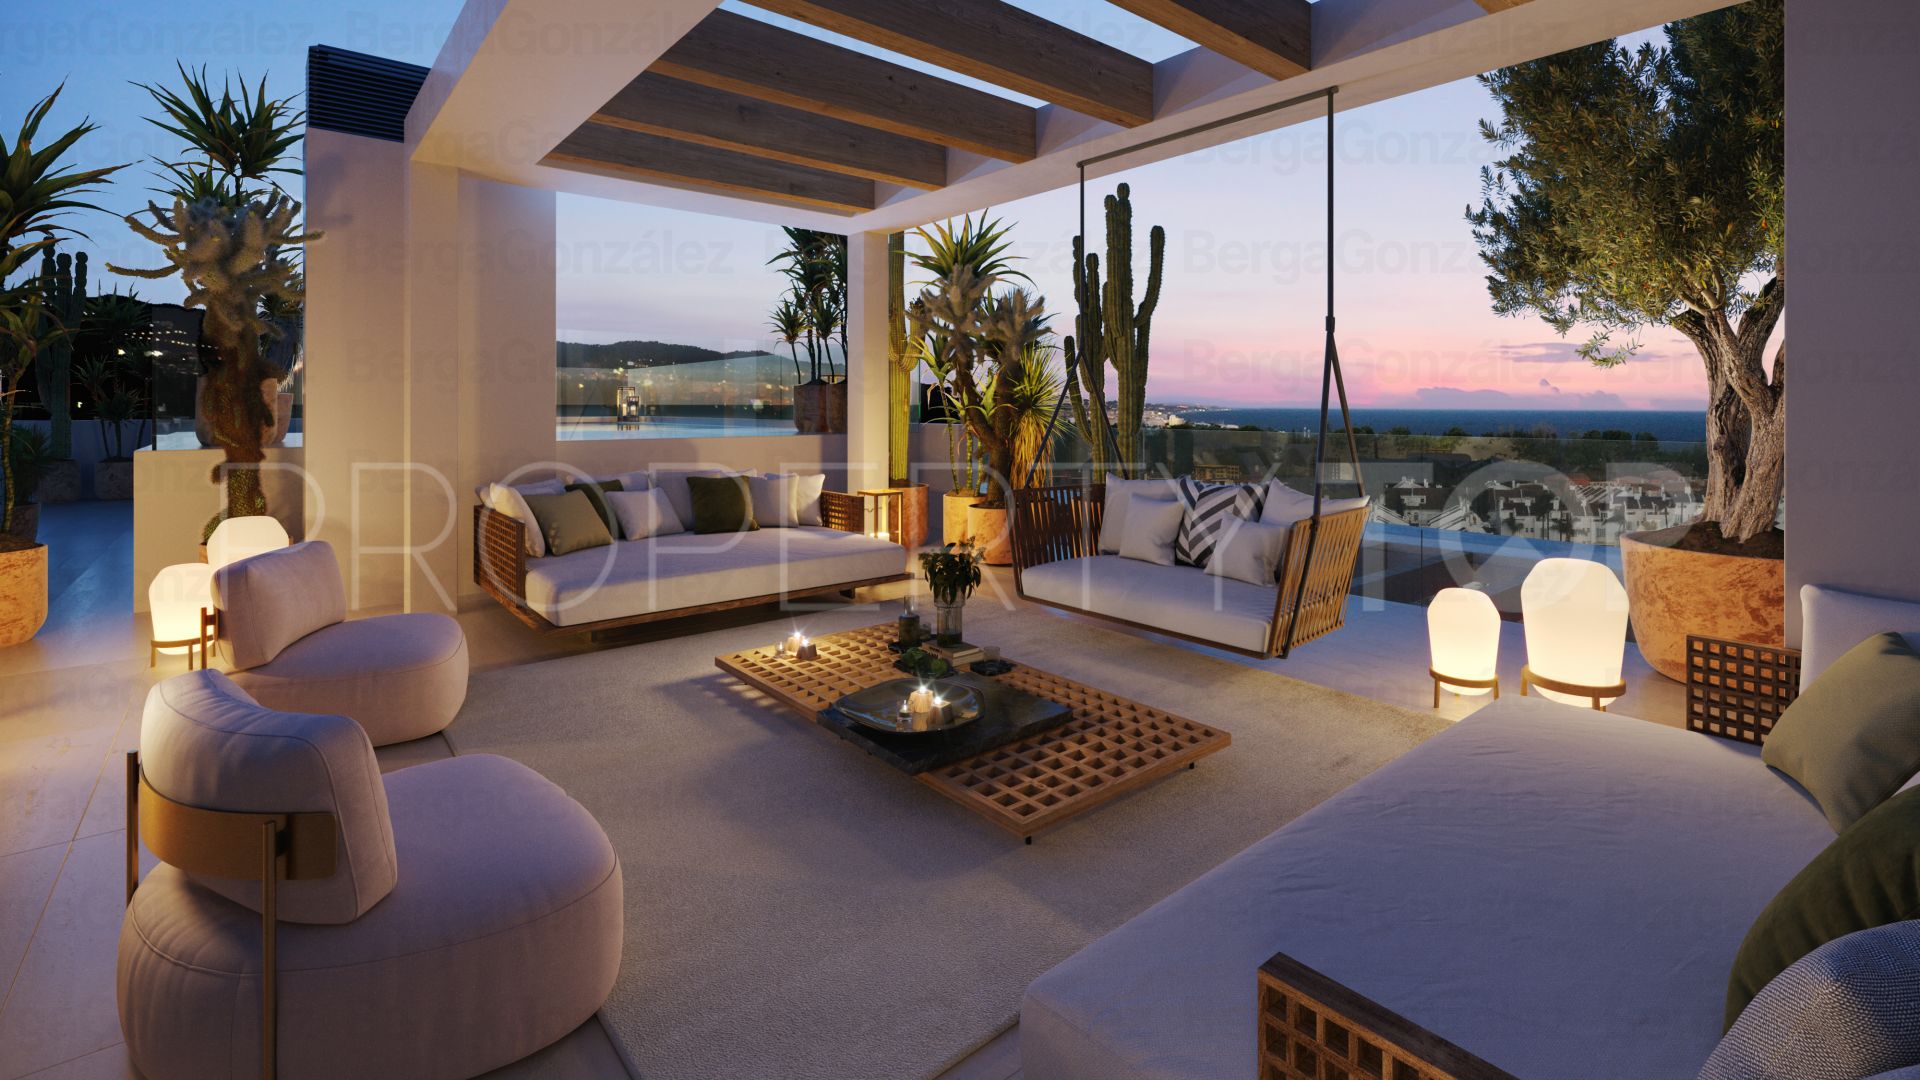 Buy Señorio de Marbella 4 bedrooms duplex penthouse